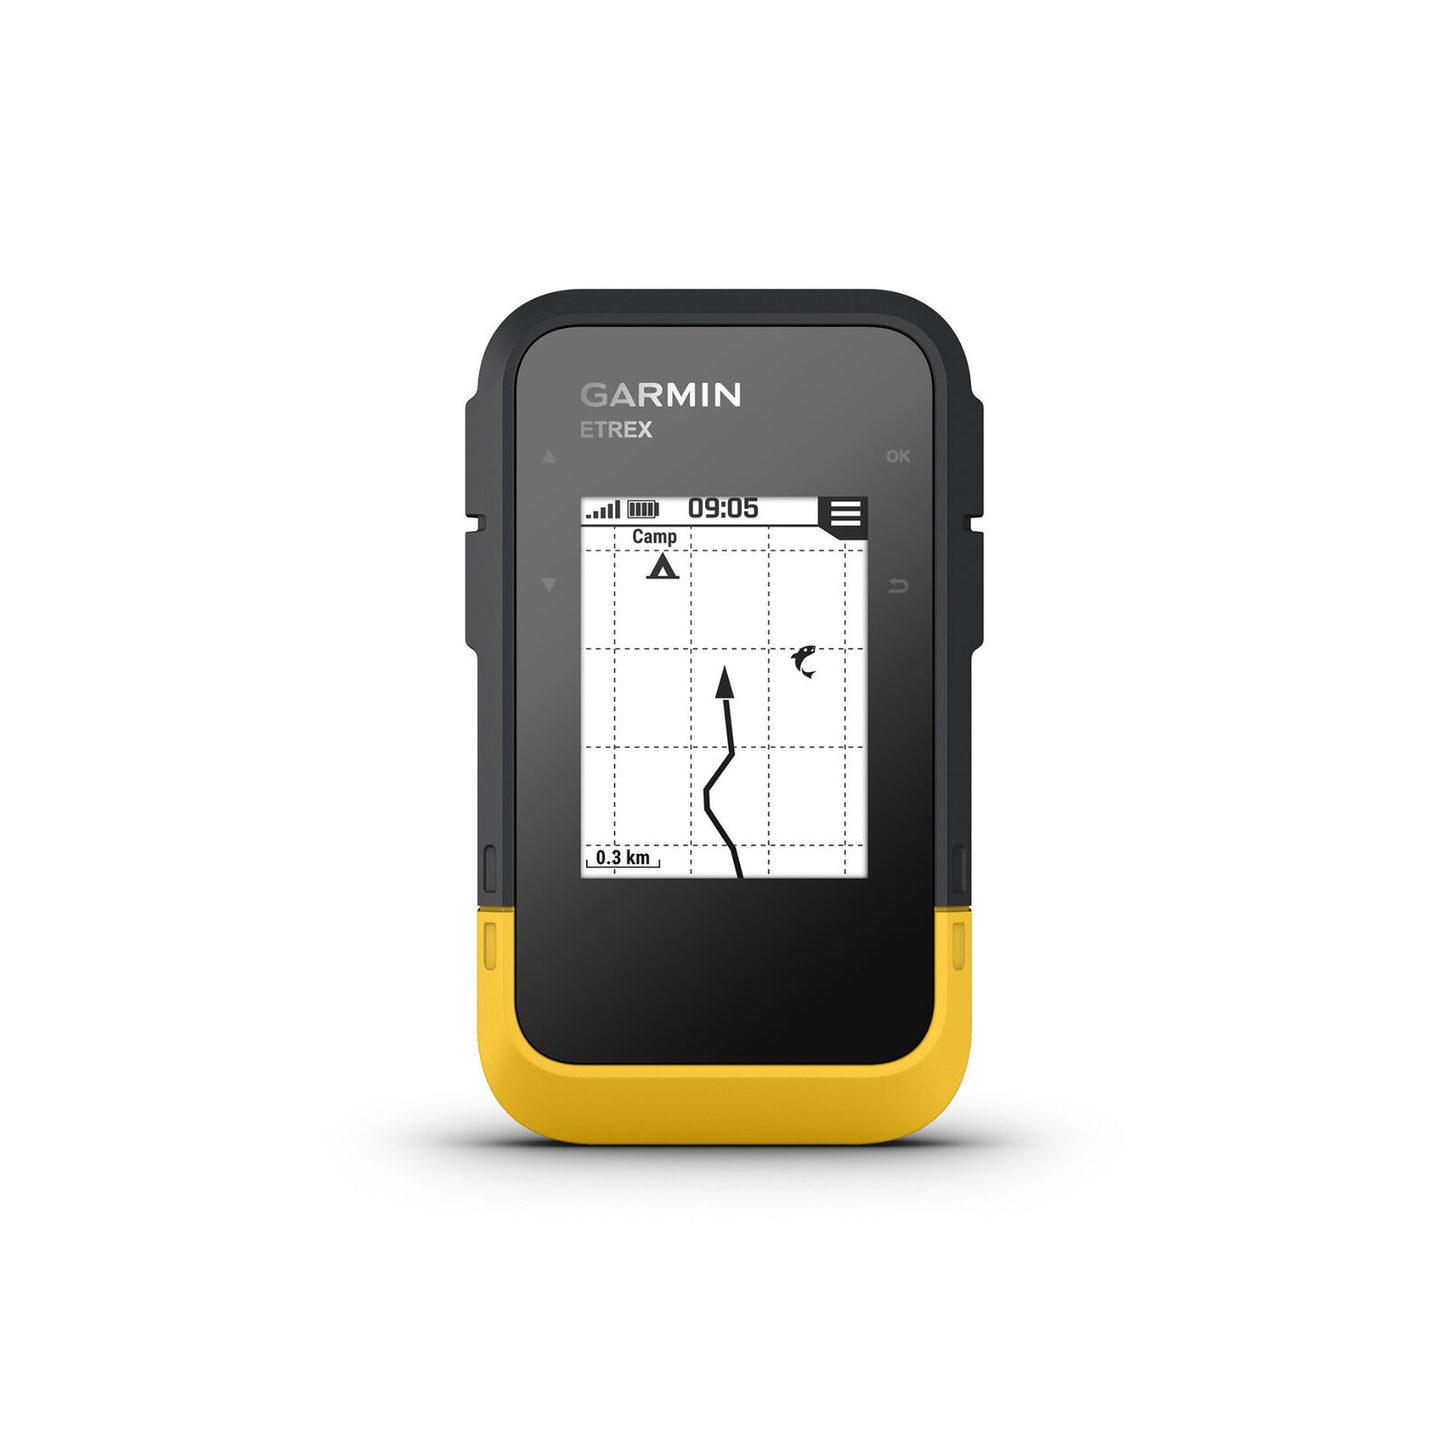 eTrex SE Handheld GPS Navigator